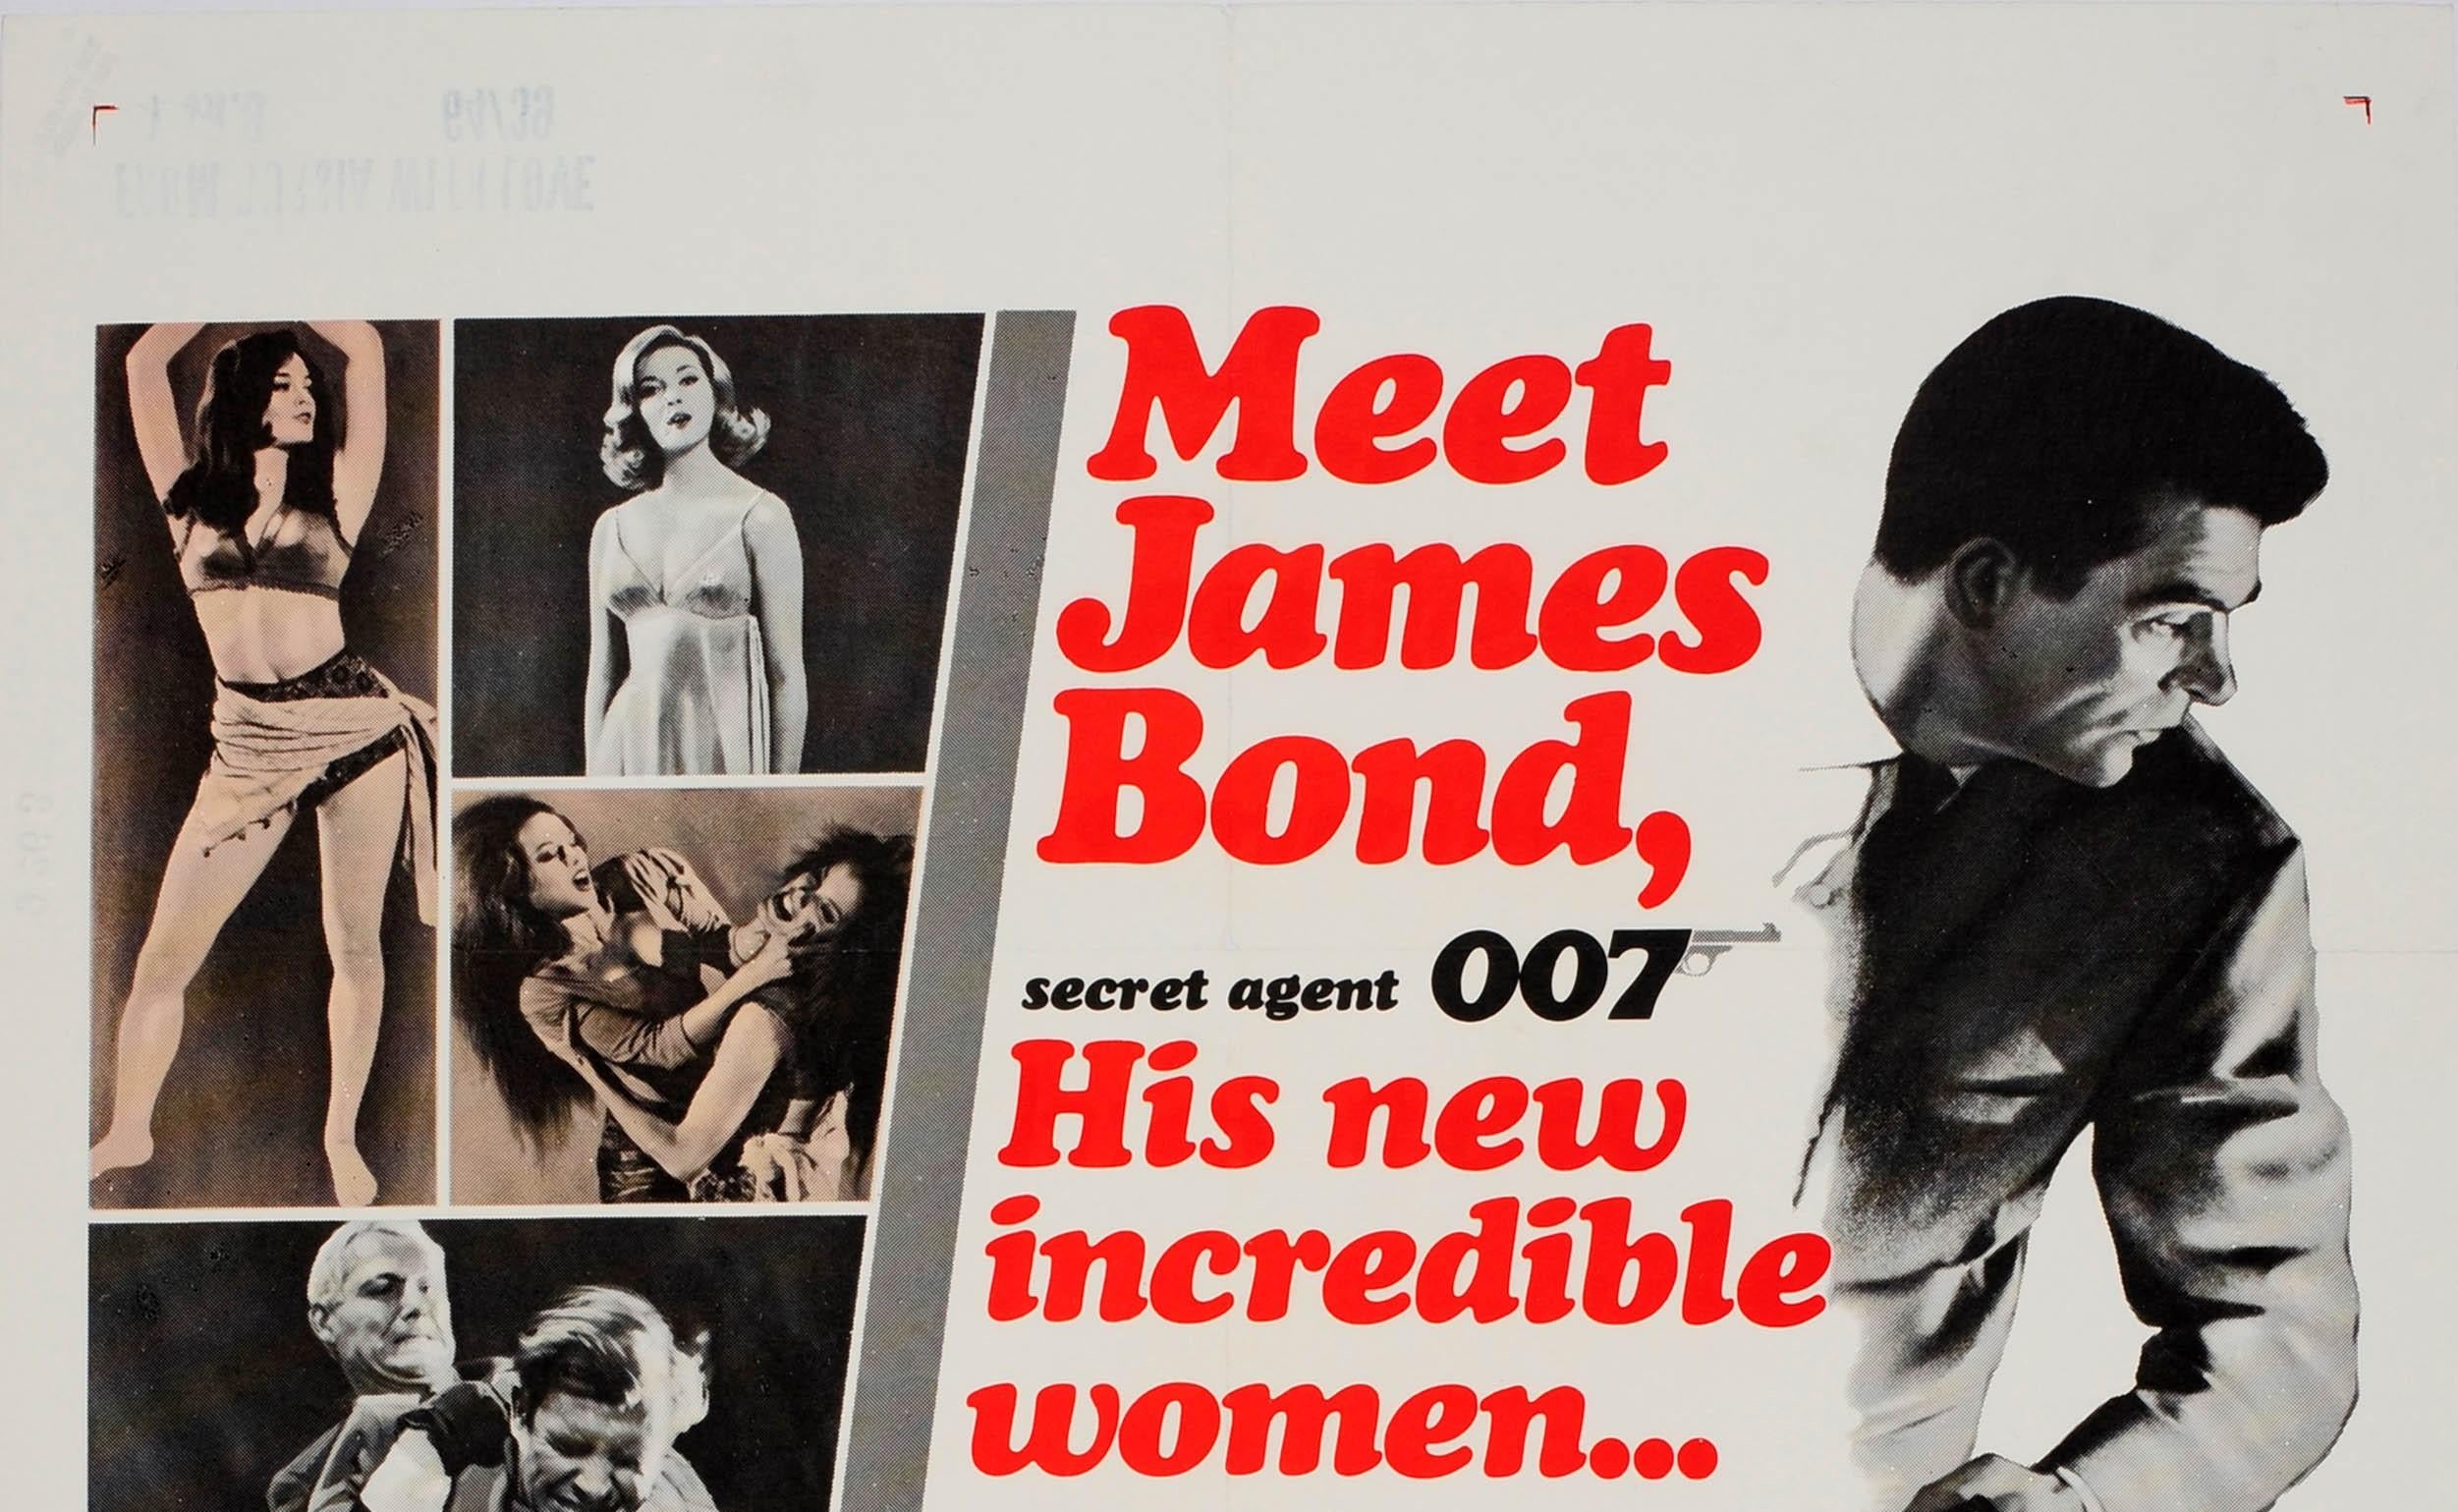 Originales altes Filmplakat für die US-Veröffentlichung des 007 James Bond Films From Russia with Love unter der Regie von Terence Young und mit Sean Connery, Robert Shaw, Pedro Armendariz, Lotte Lenya und Bernard Lee in den Hauptrollen. Großartiges